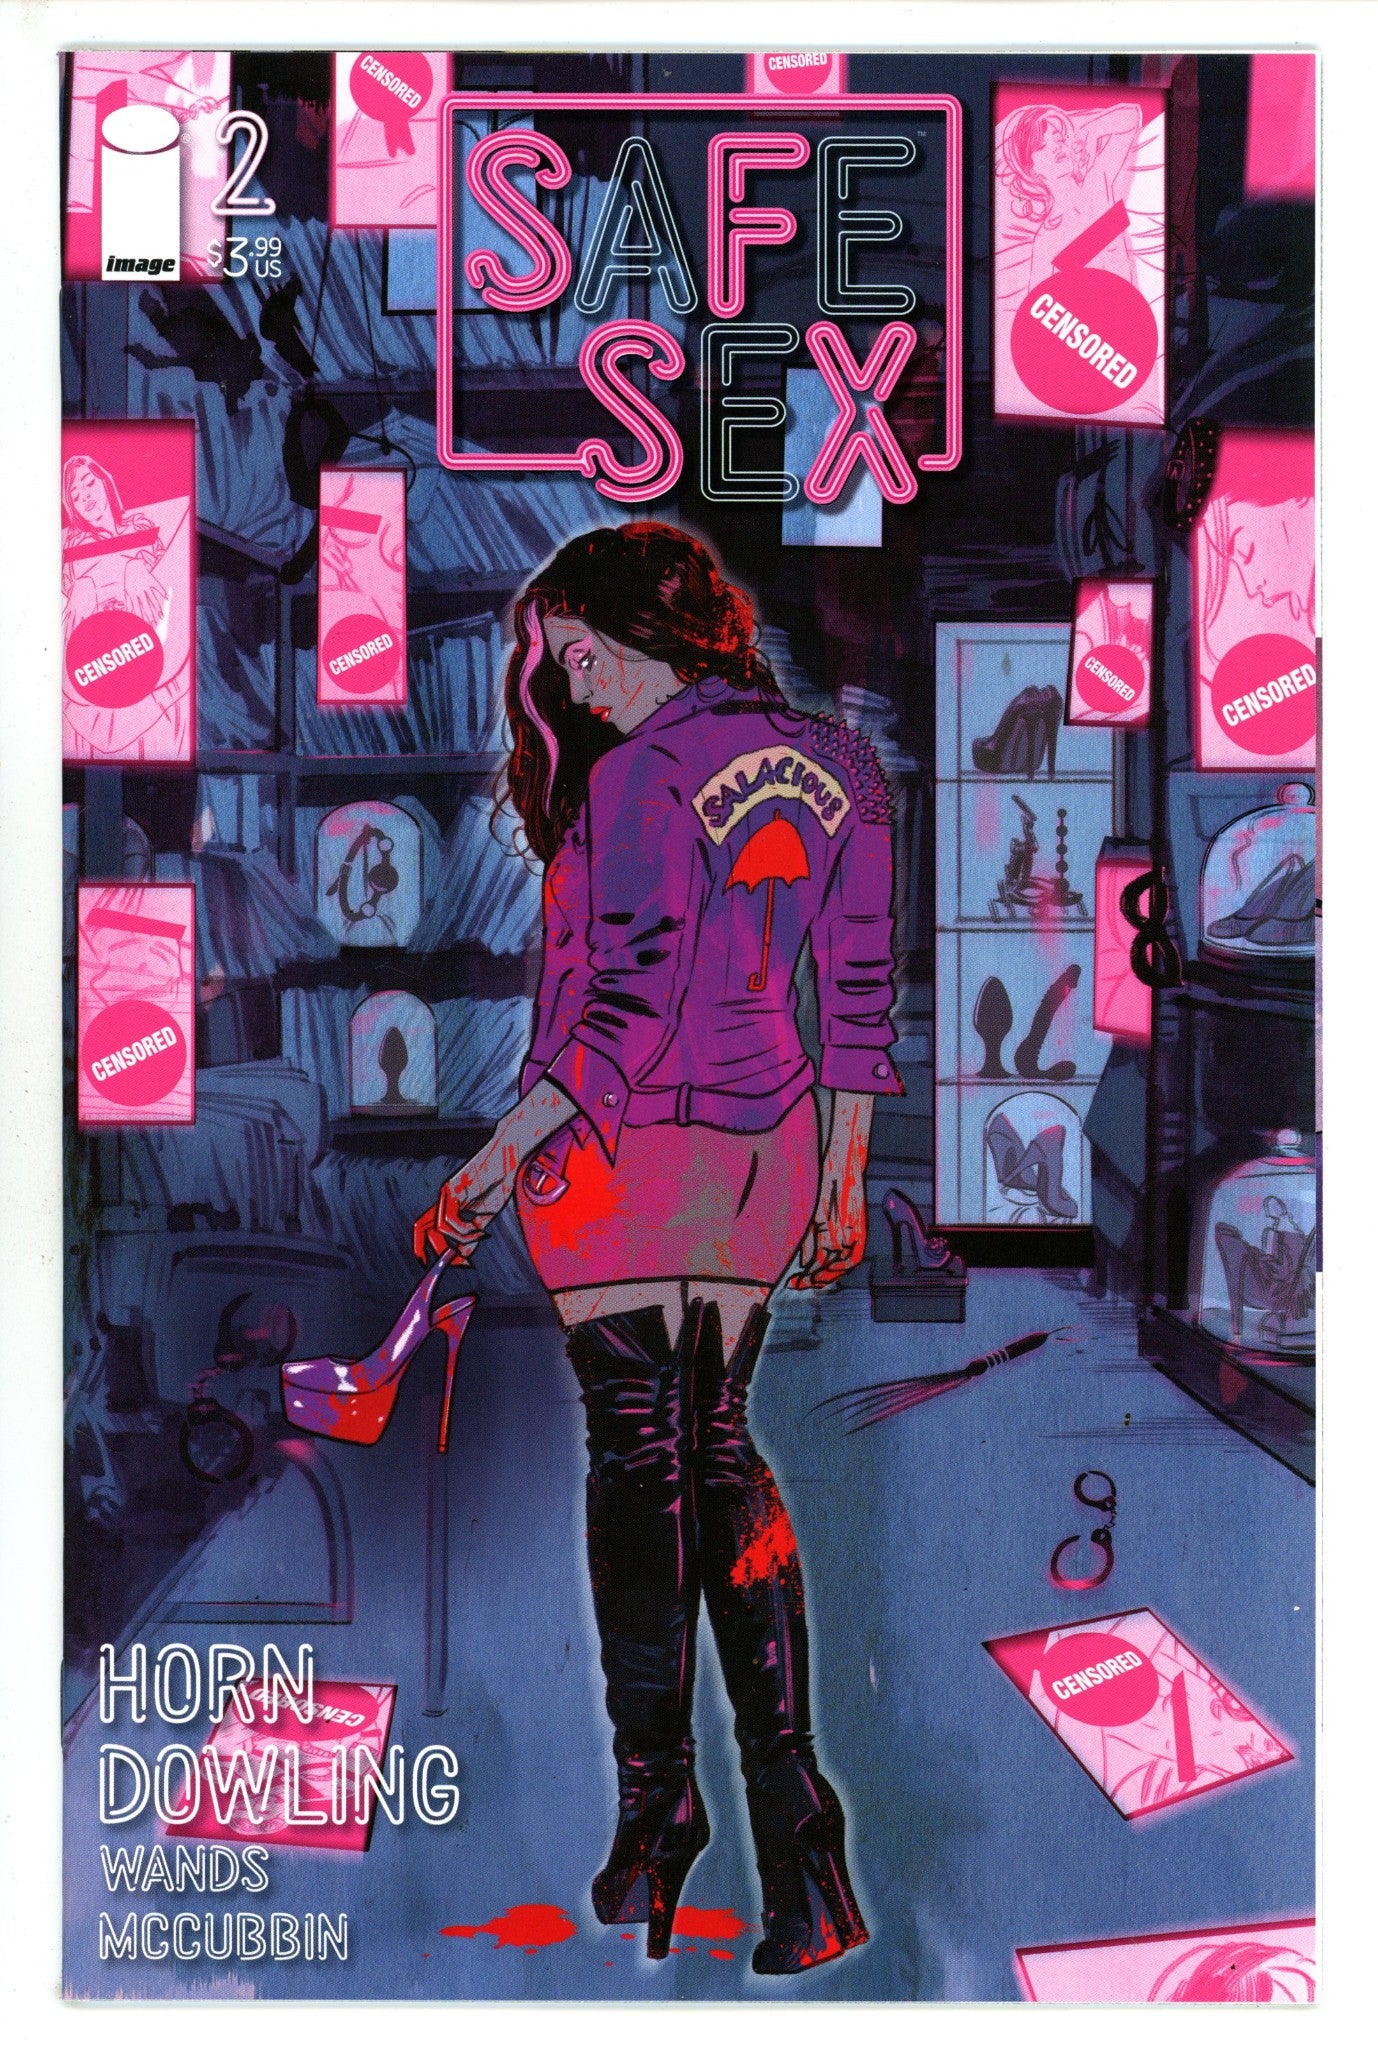 SFSX: Safe Sex 2 (2021)